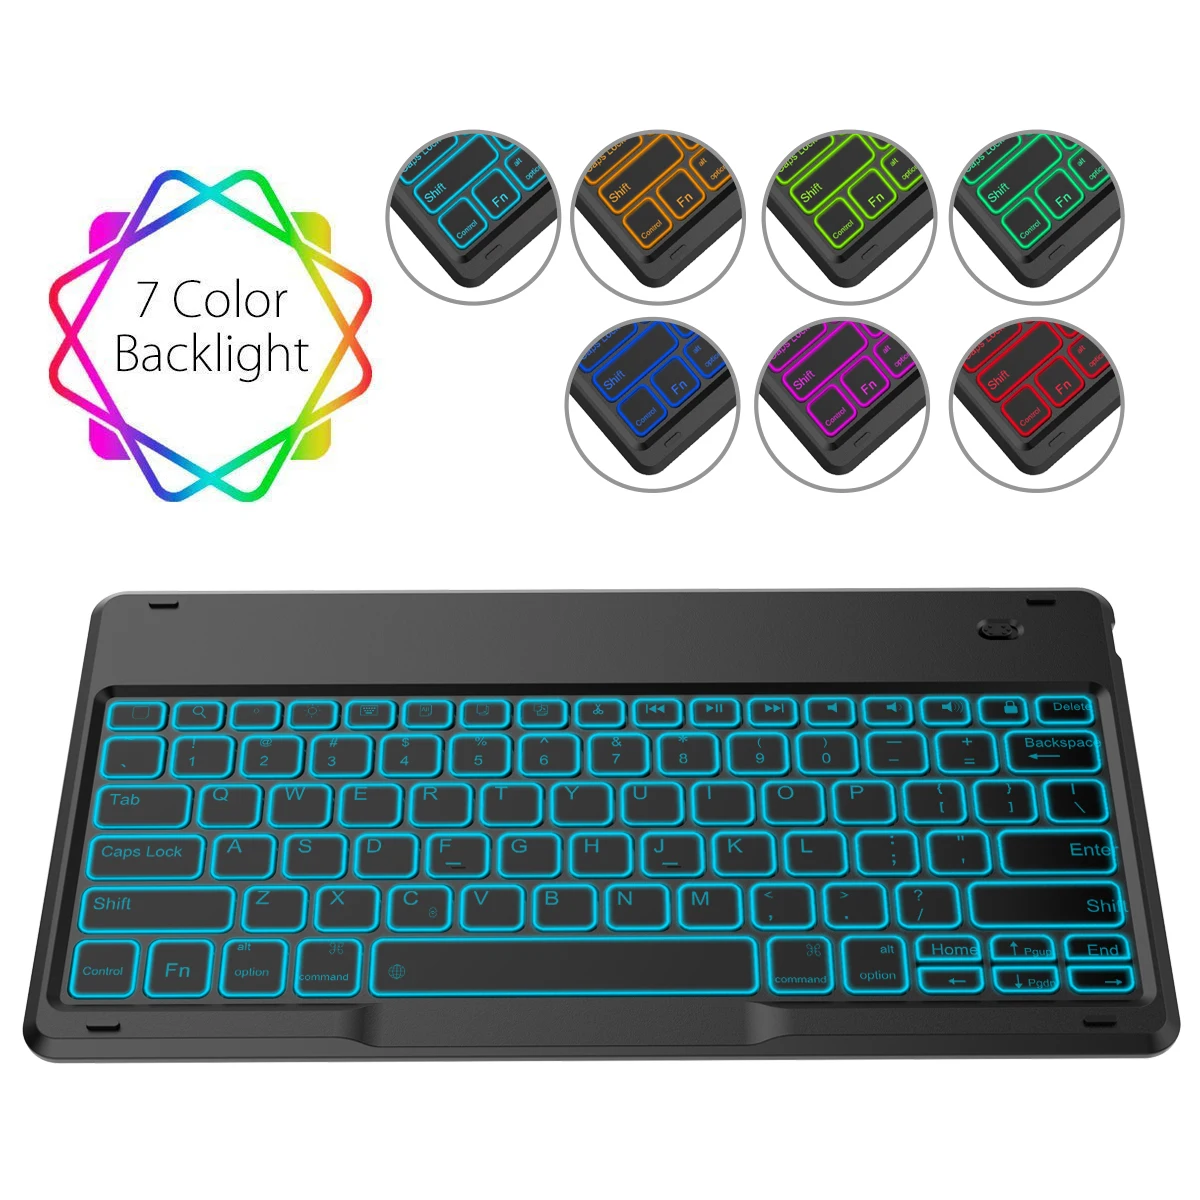 Чехол с американской клавиатурой для iPad Pro 12,9 дюйма, кожаный чехол, съемный, 7 цветов, с подсветкой, беспроводная клавиатура, планшет, откидная подставка, чехол